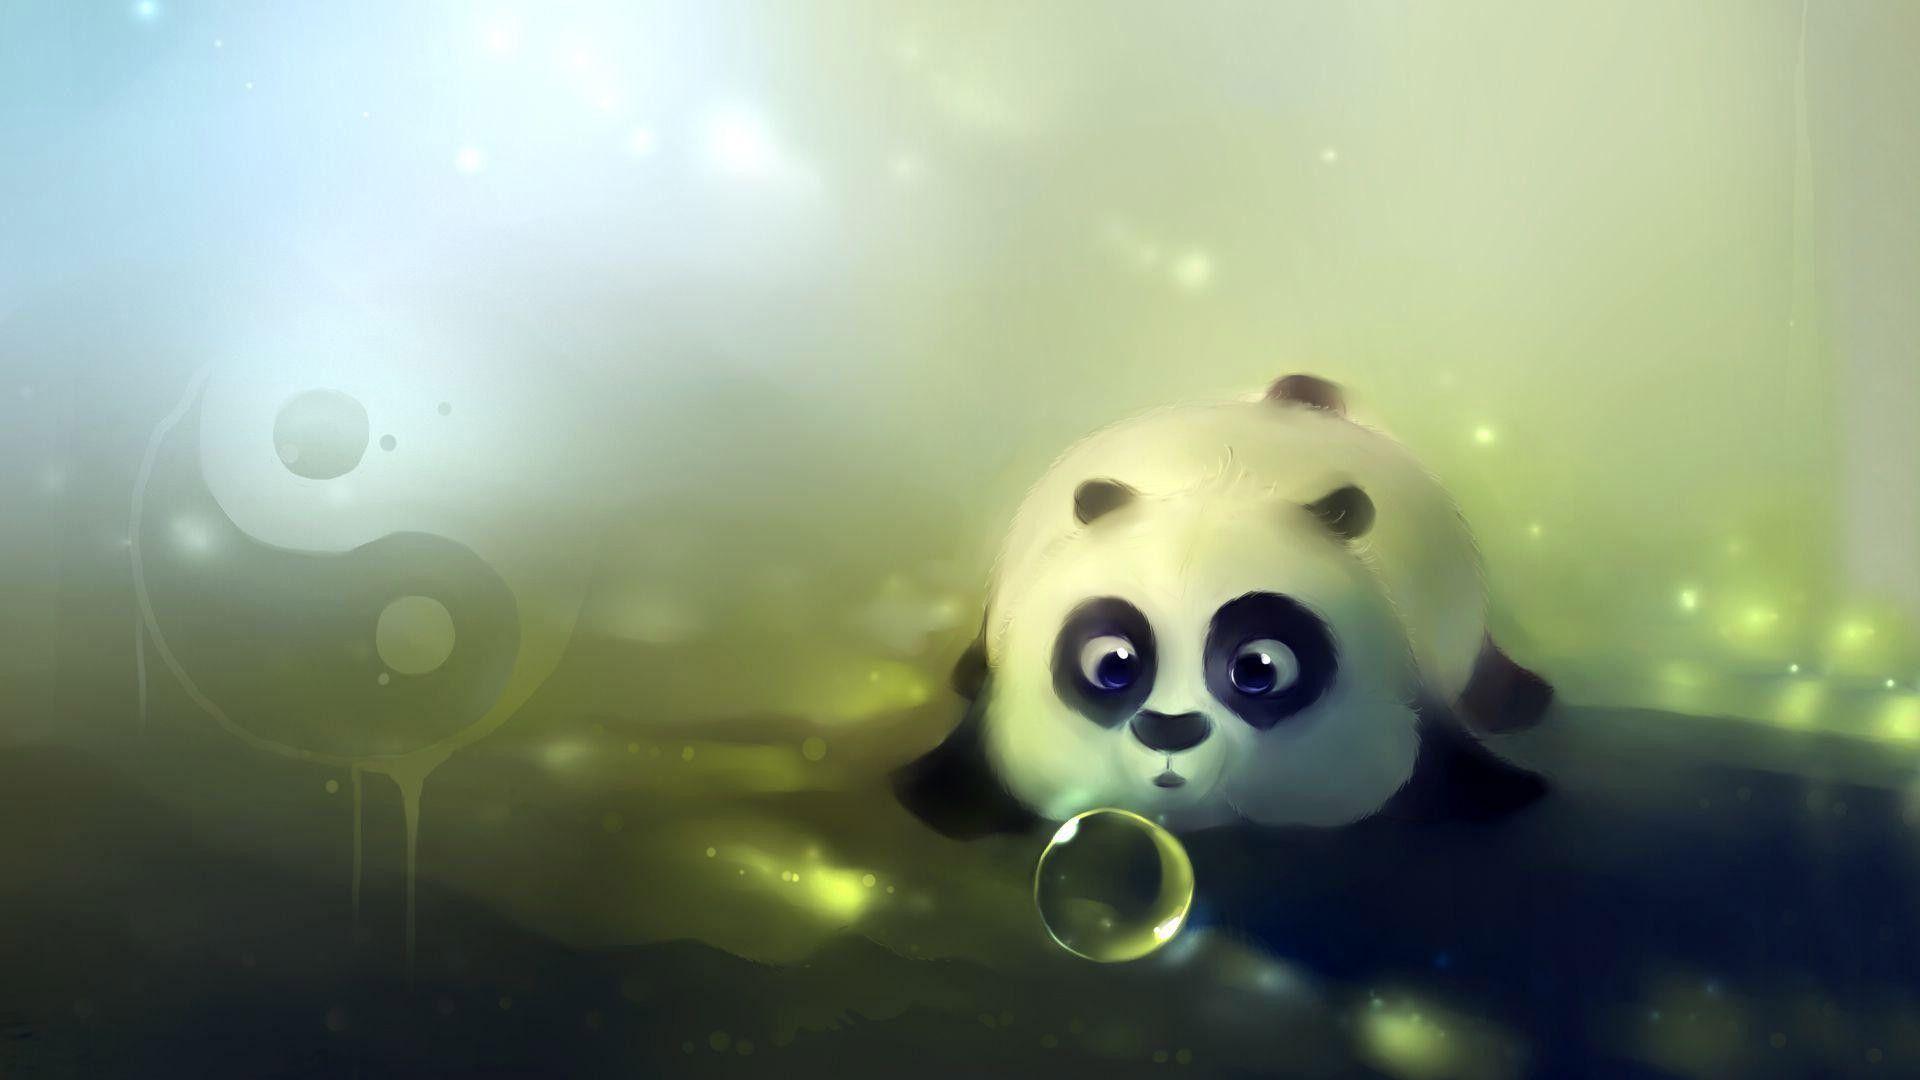 Cute Baby Panda Wallpapers - Wallpaper Cave